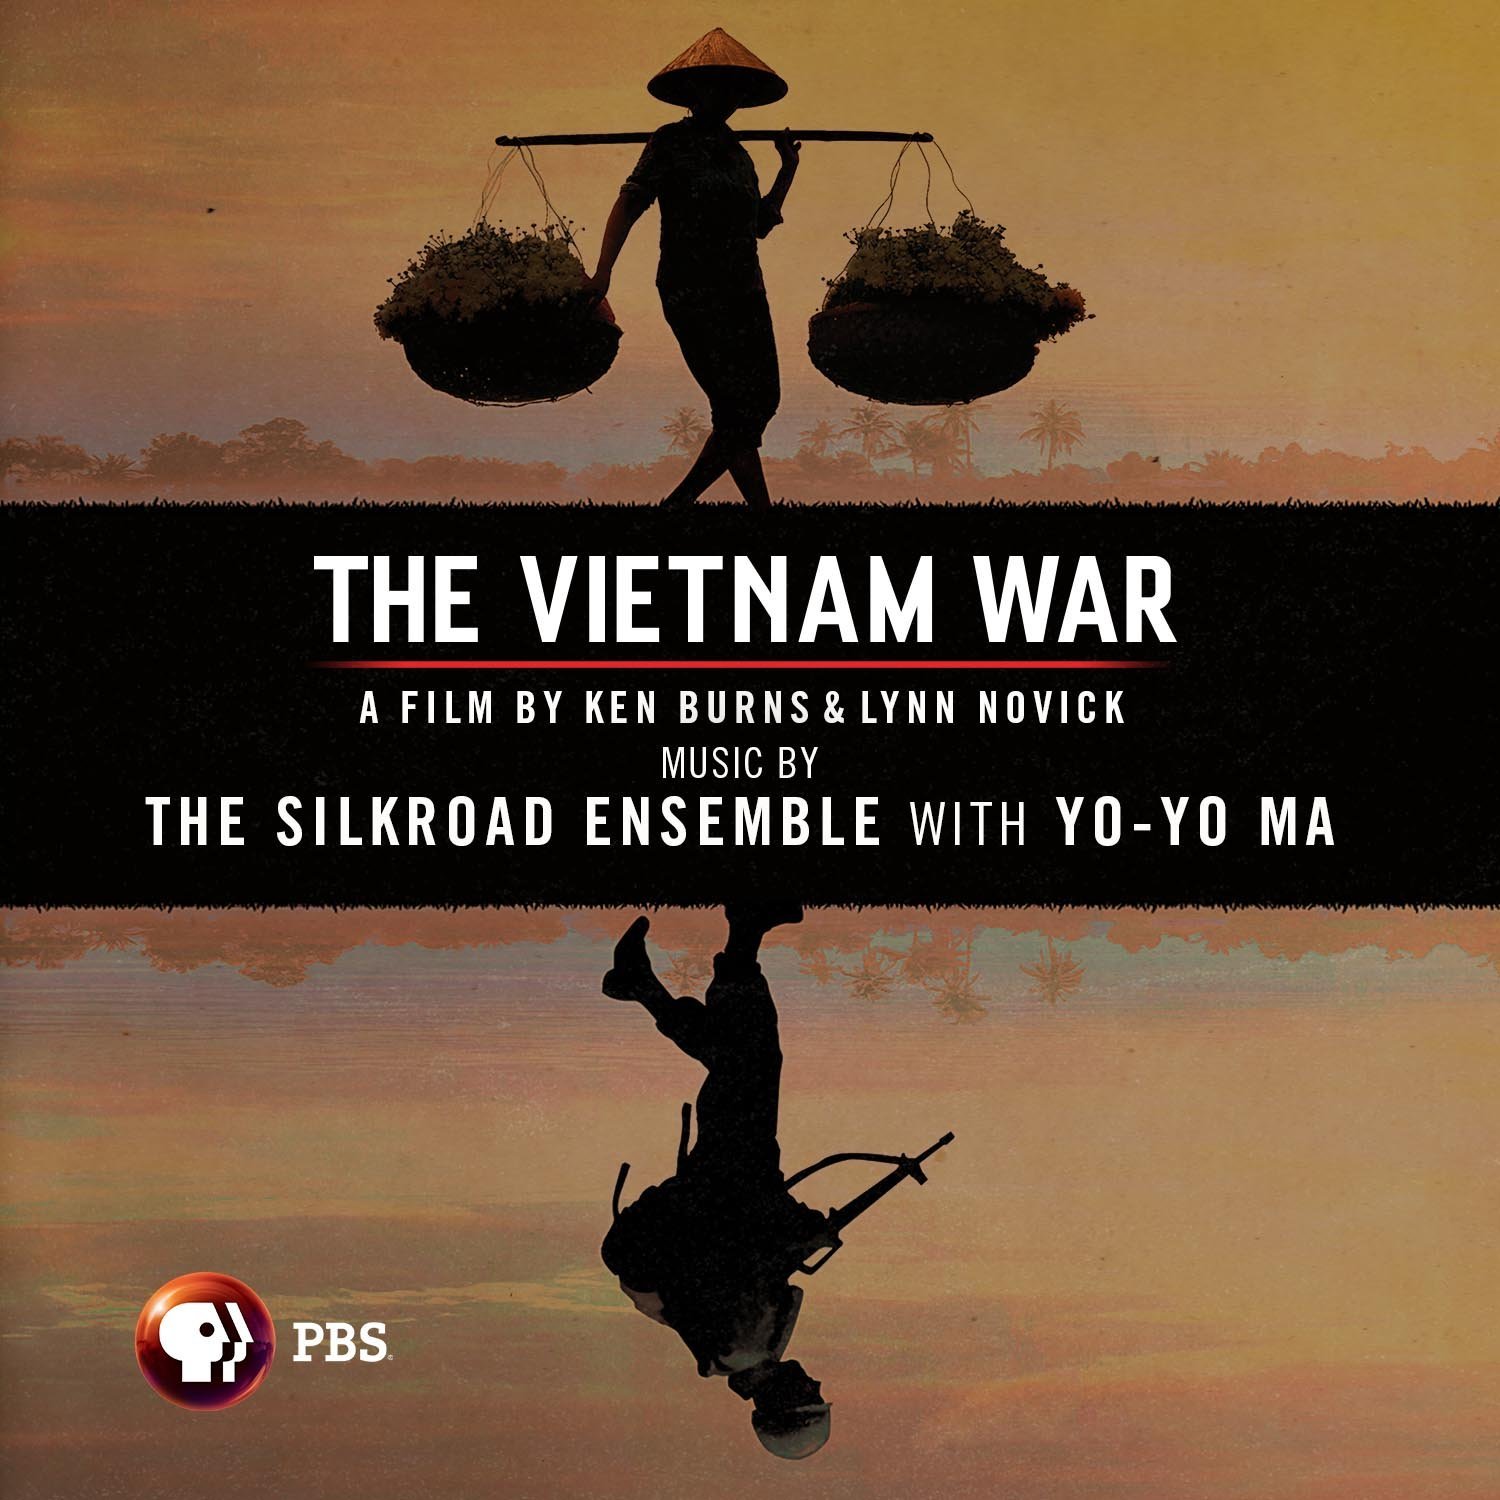 La guerre du Vietnam (The Silkroad Ensemble avec Yo-Yo Ma) (The Vietnam War)